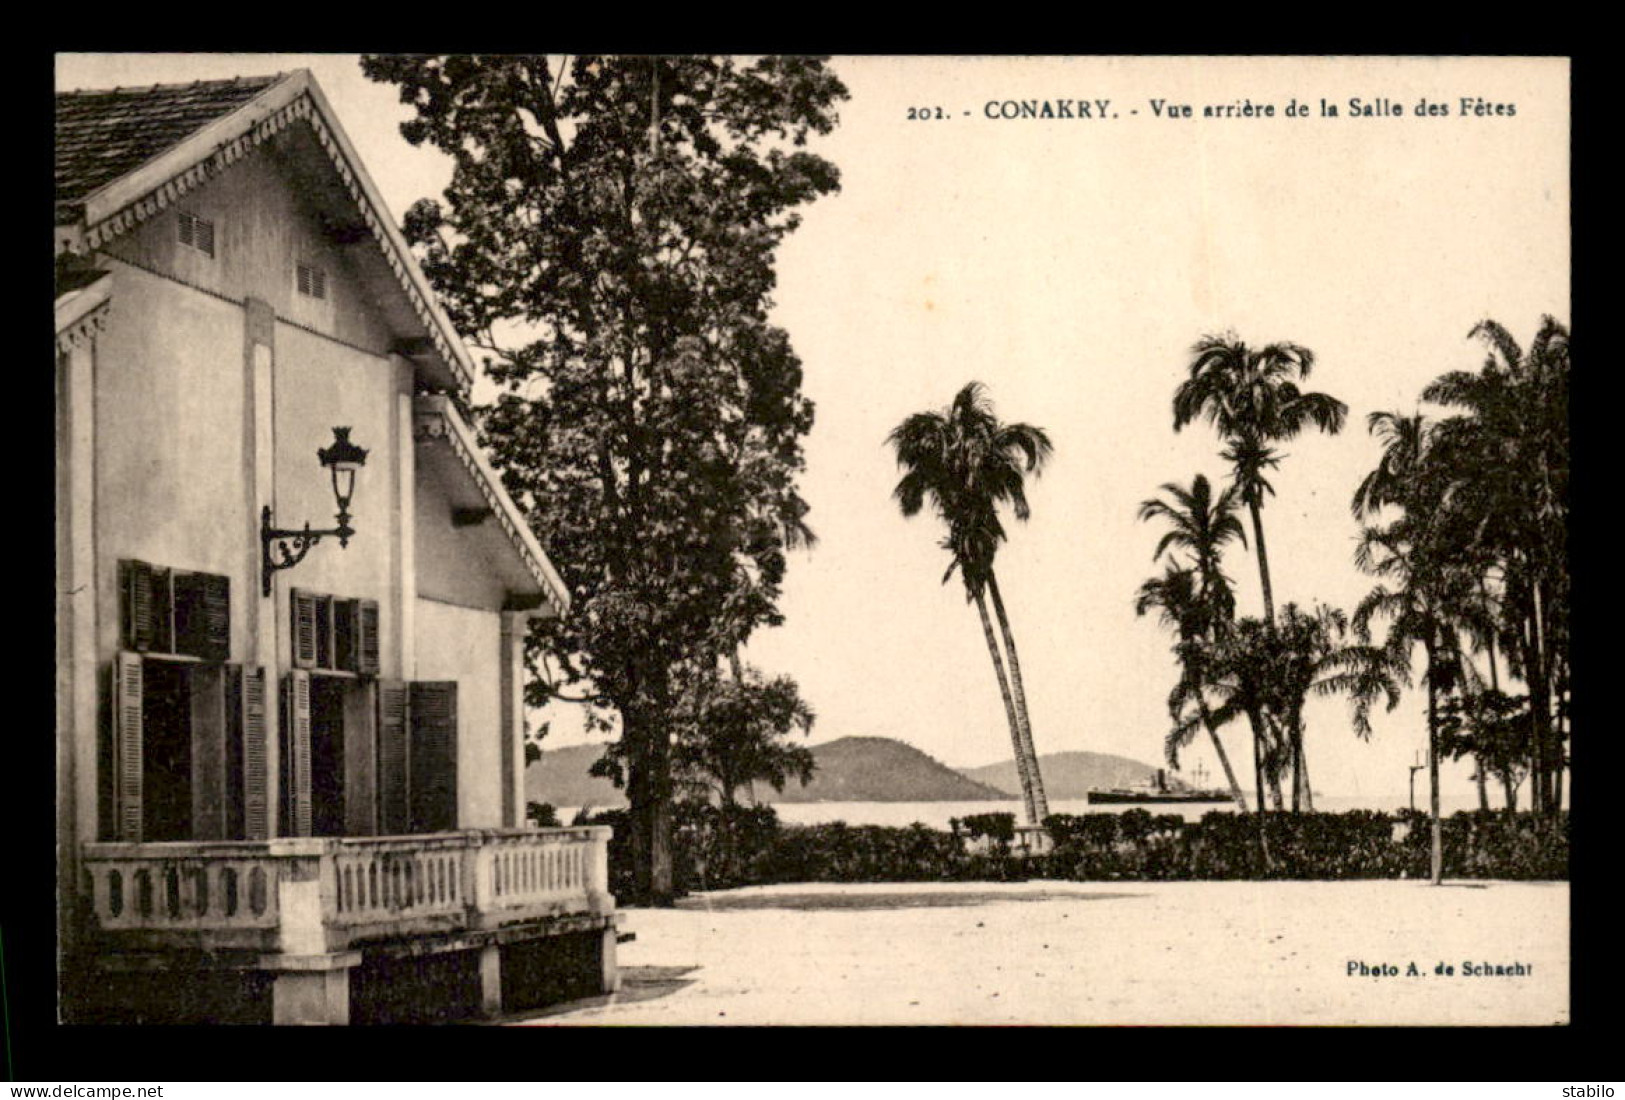 GUINEE - CONAKRY - VUE ARRIERE DE LA SALLE DES FETES - Guinée